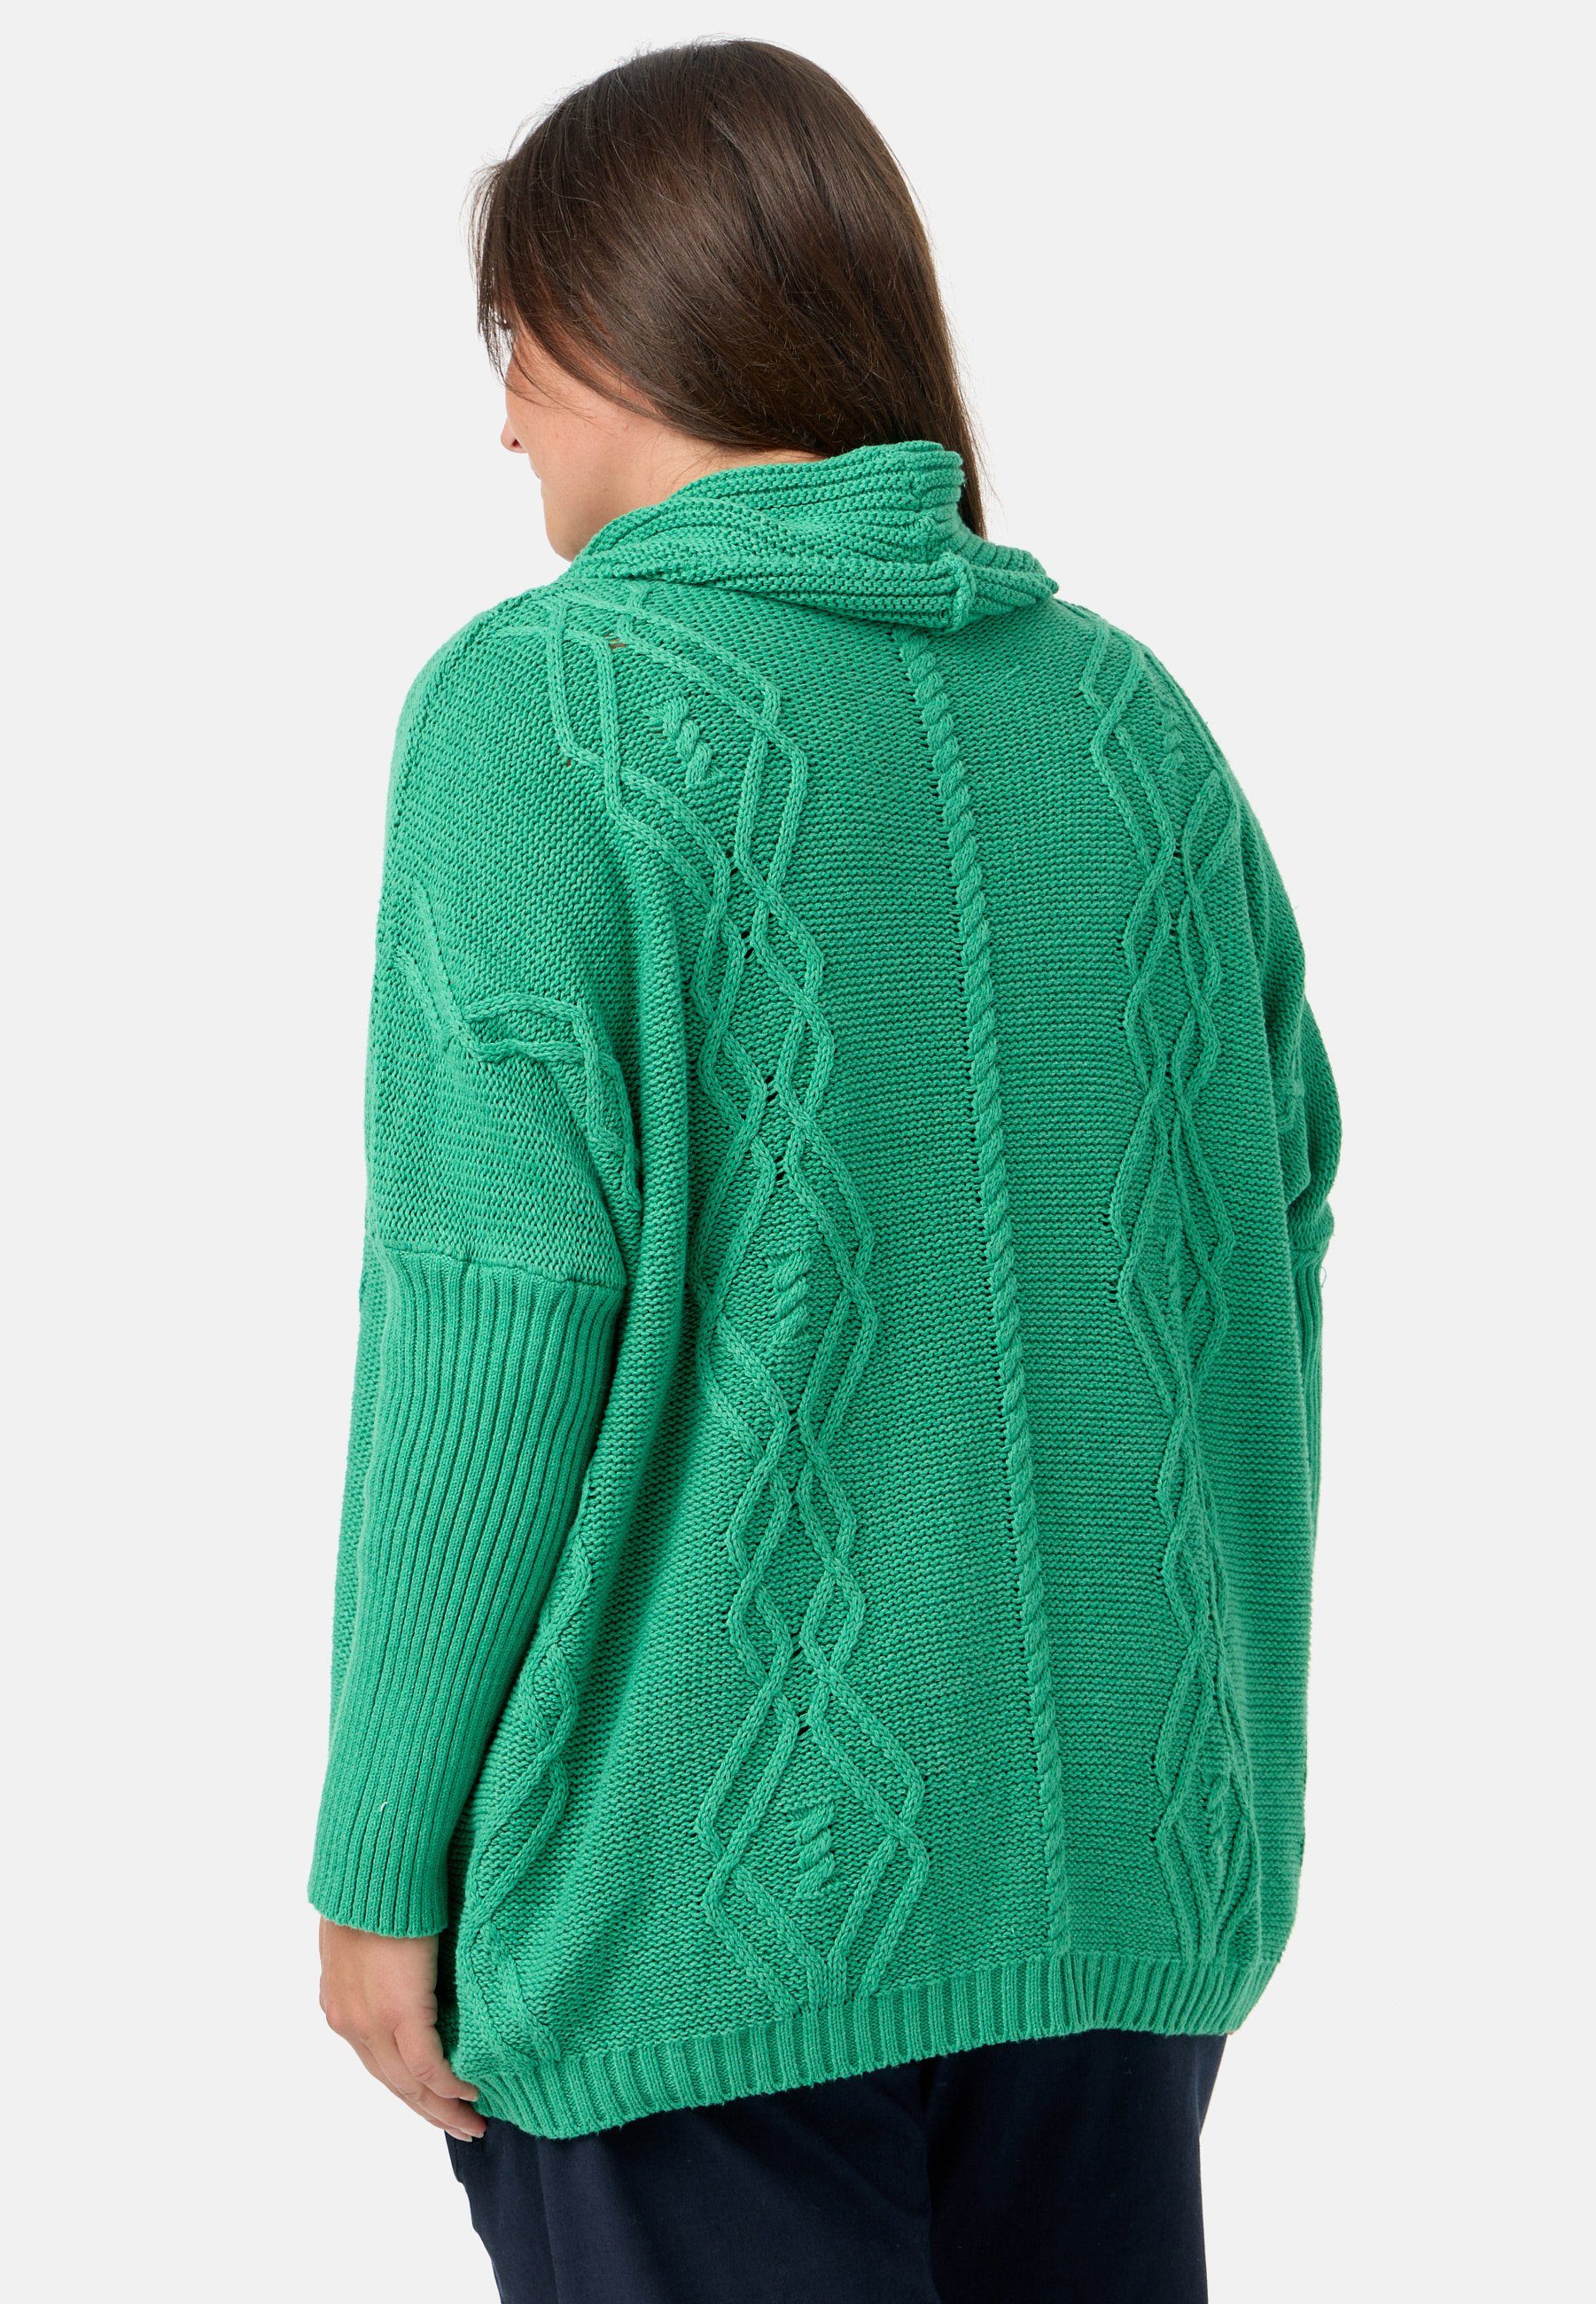 Kekoo Strickpullover Strick 100% 'Pure' Baumwolle aus mit Schalkragen Poncho-Shirt Smaragd